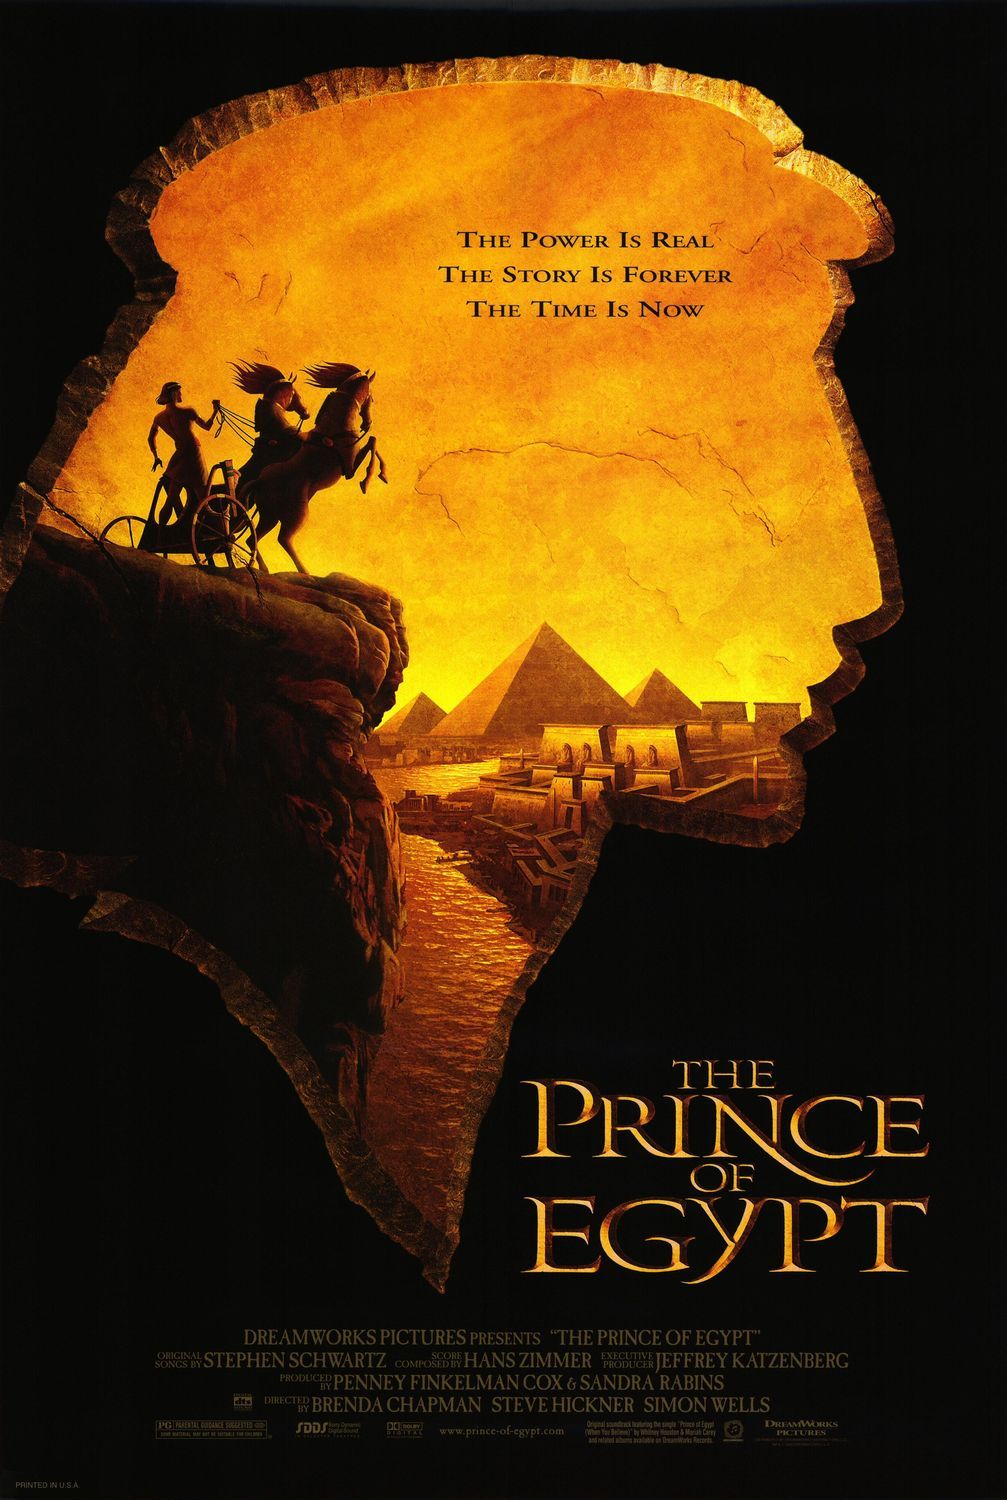 The Prince Egypt